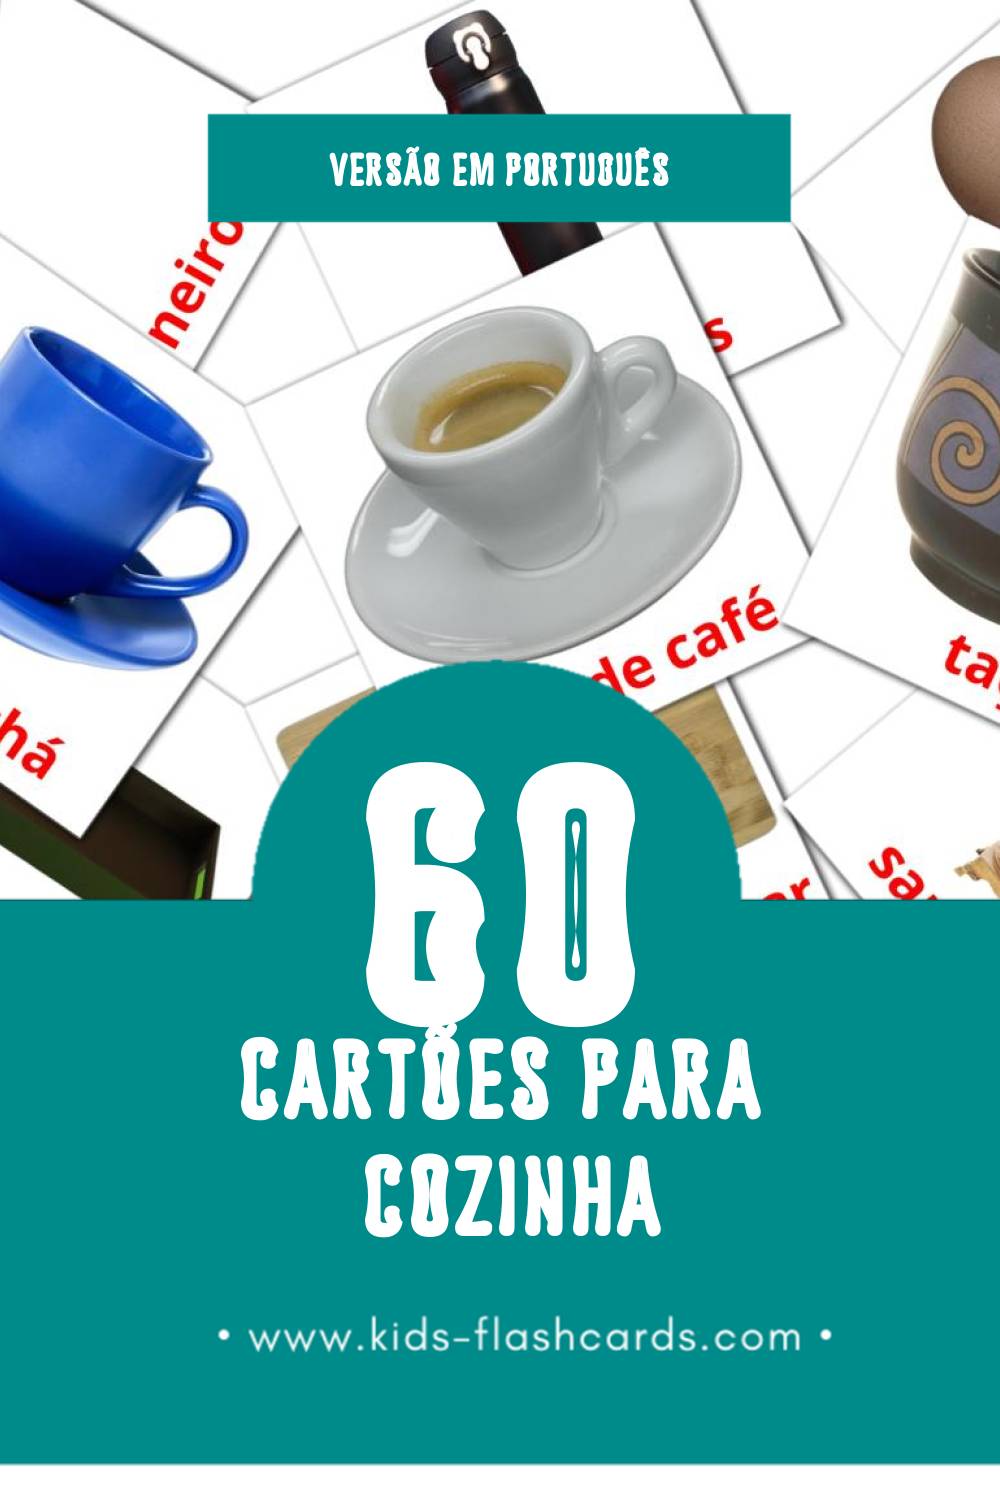 Flashcards de Cozinha Visuais para Toddlers (60 cartões em Português)